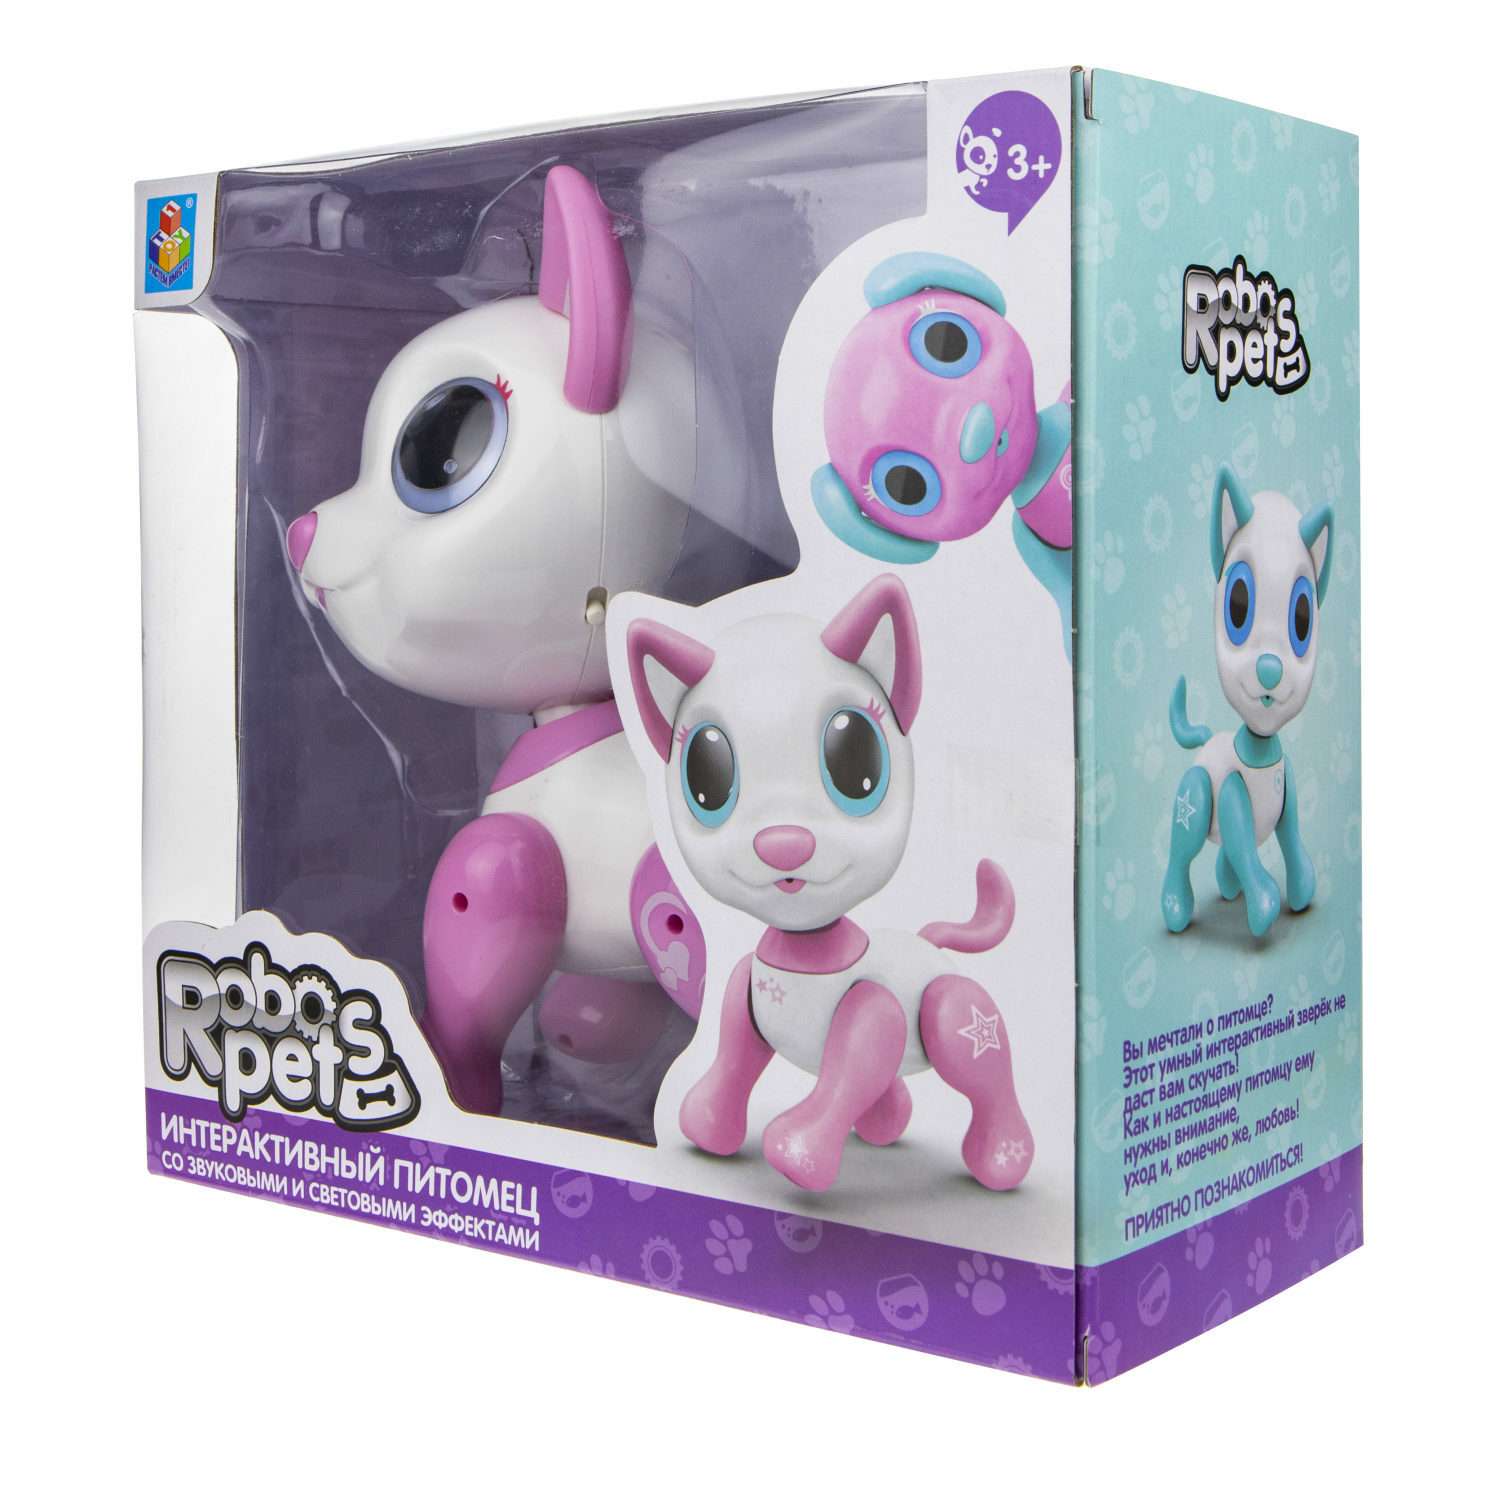 Интерактивная игрушка Robo Pets Робо-котёнок белый/розовый - фото 7